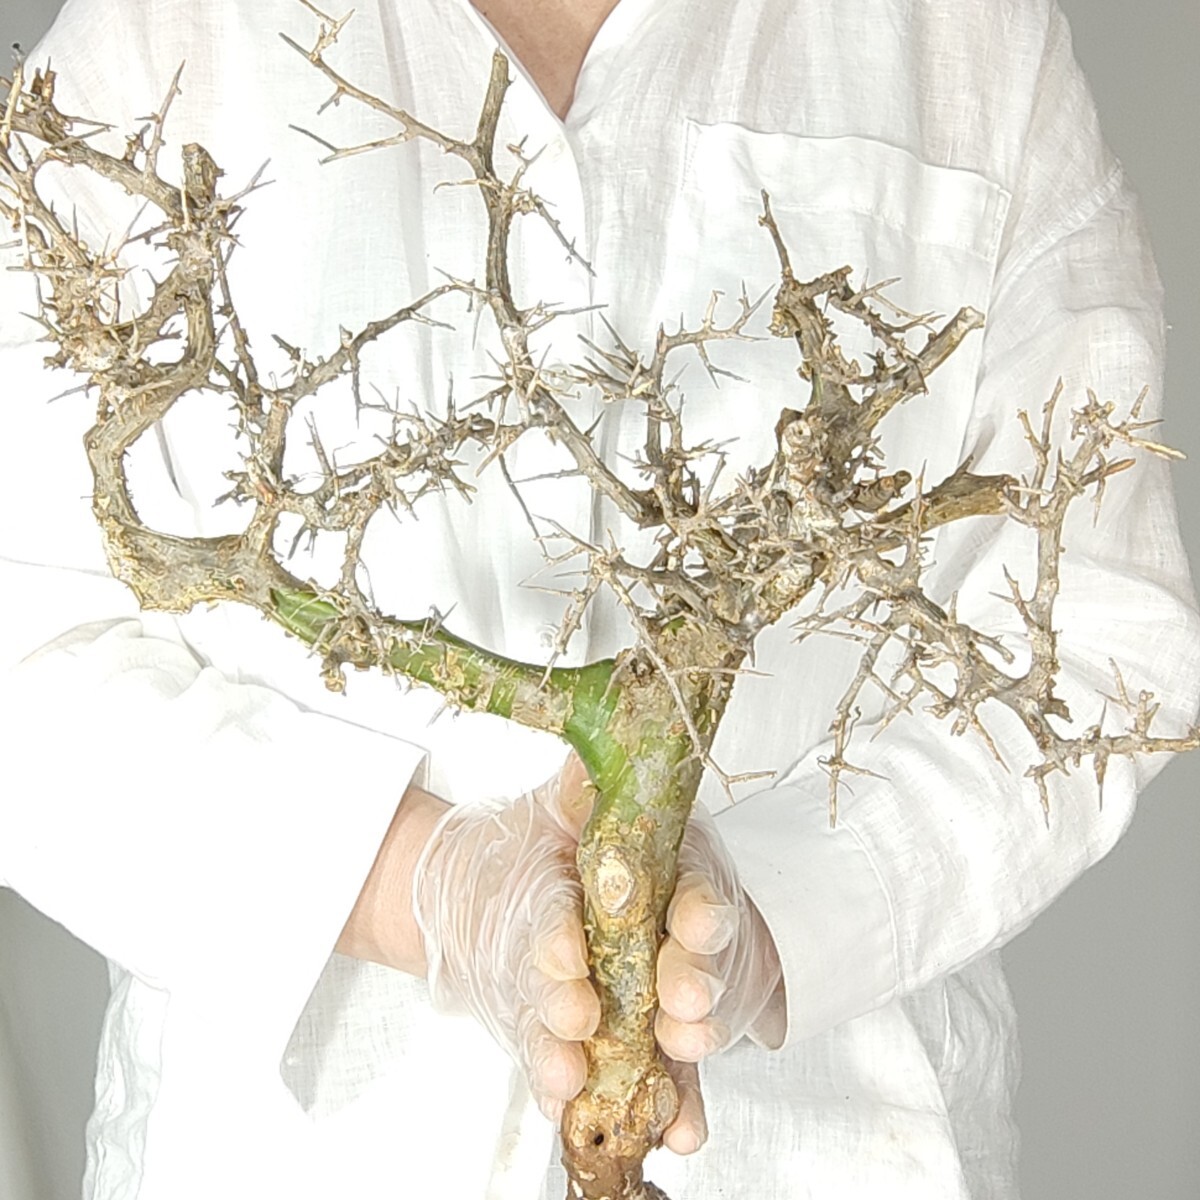 カンペストリス V030コミフォラ・カンペストリス 塊根植物 観葉植物 未発根 多肉植物 灌木 パキプス グラキリス 盆栽 アガベ コーデックスの画像1